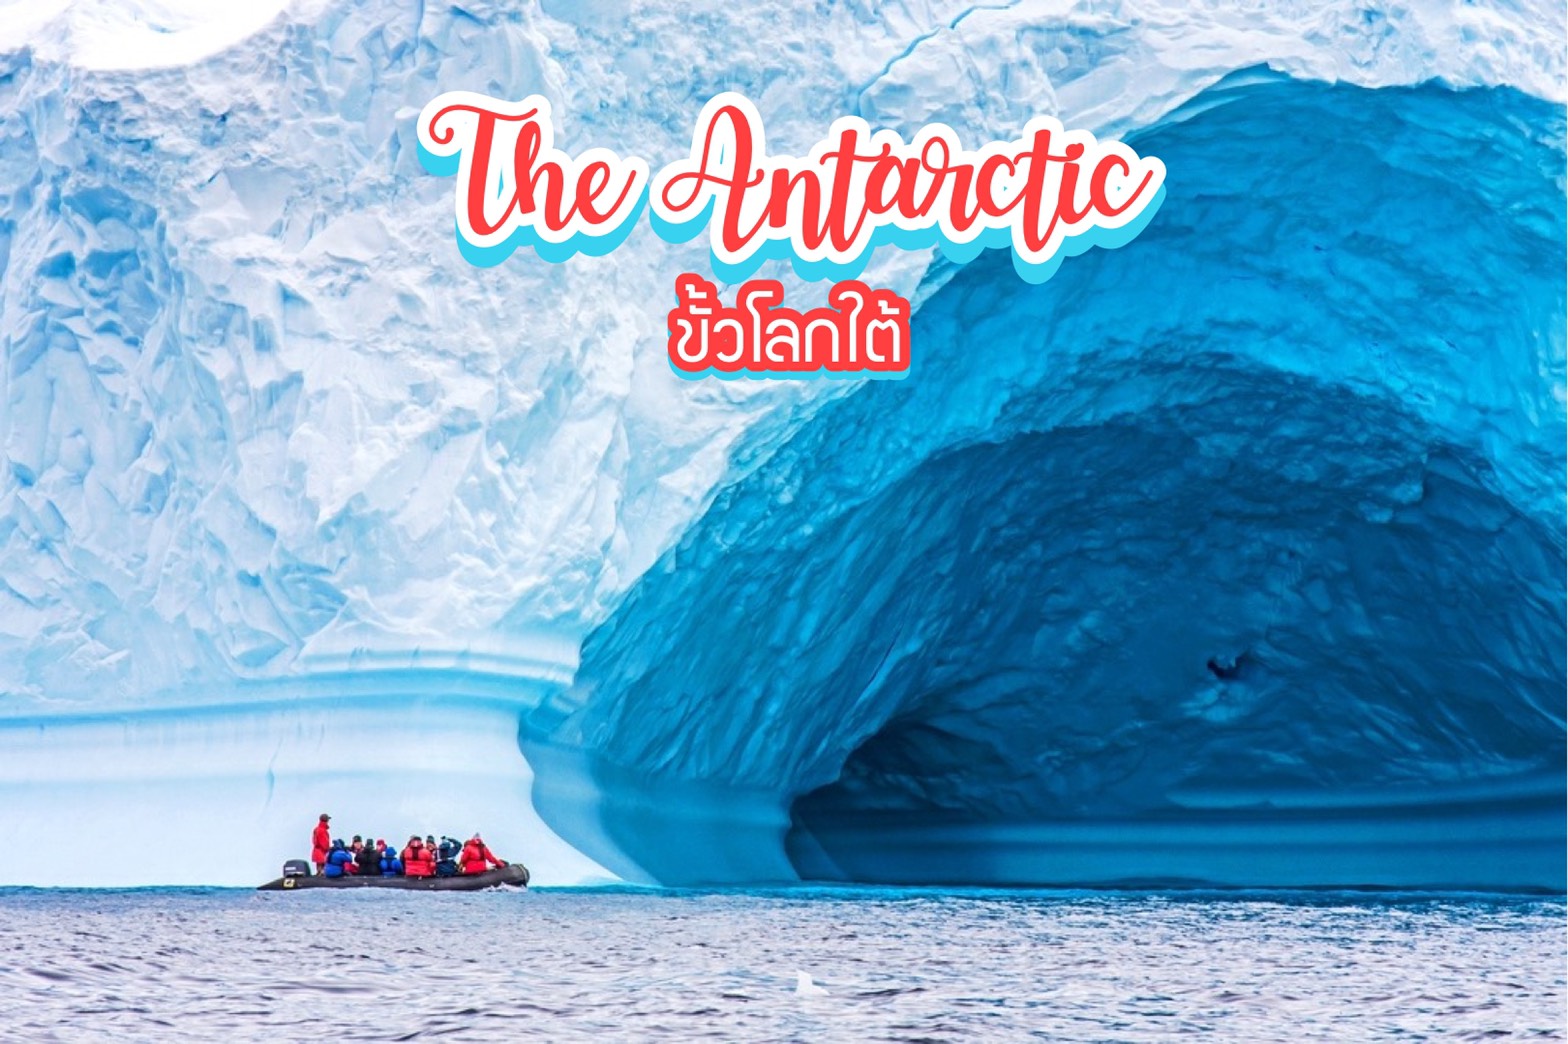 เที่ยวขั้วโลกใต้ The Antarctic, South Pole